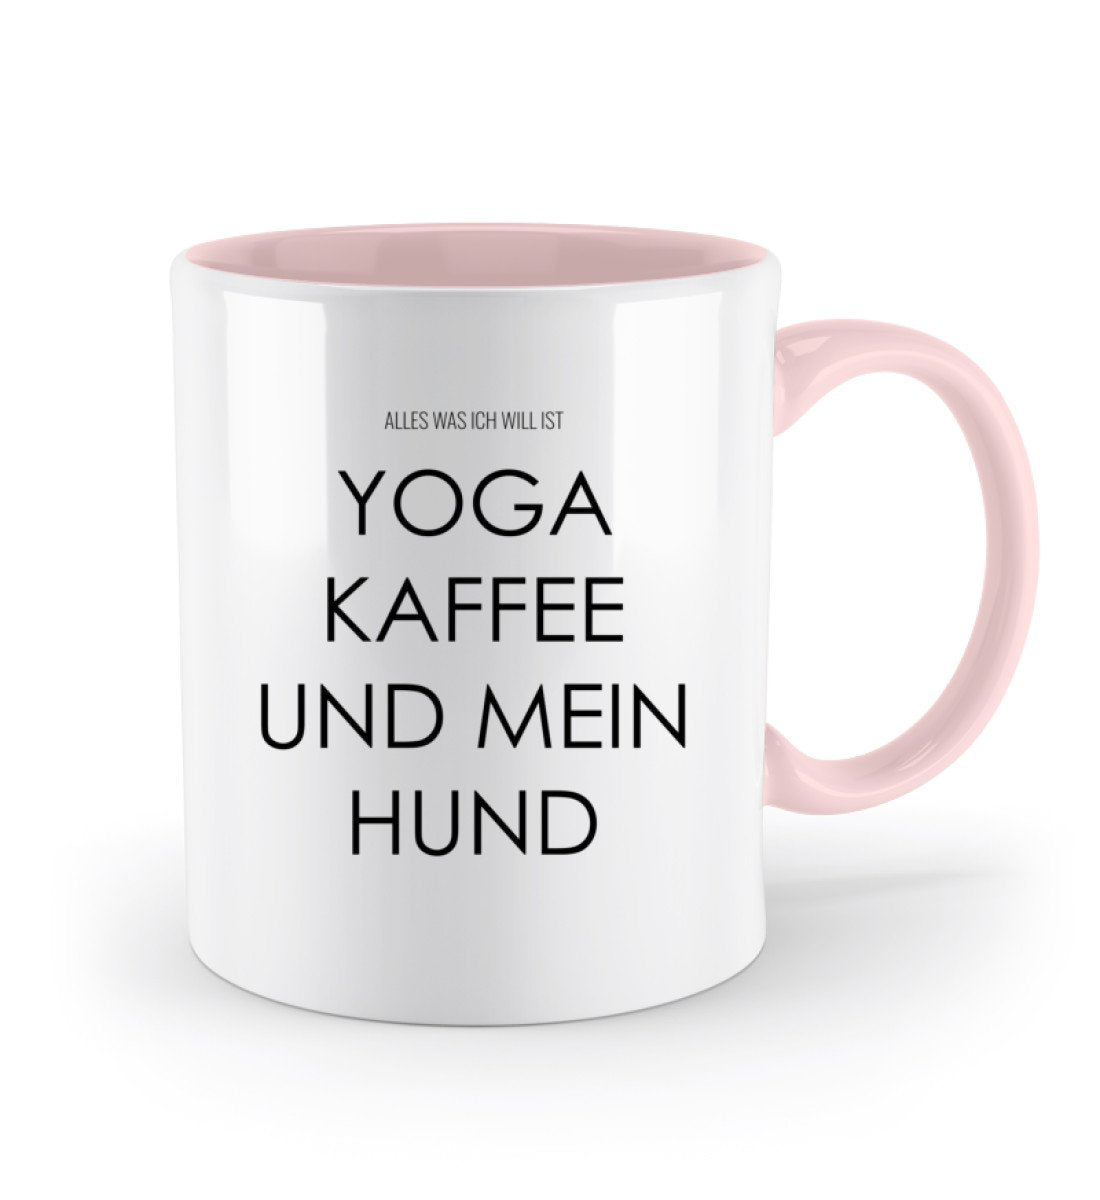 Yoga Kaffee und mein Hund Tasse